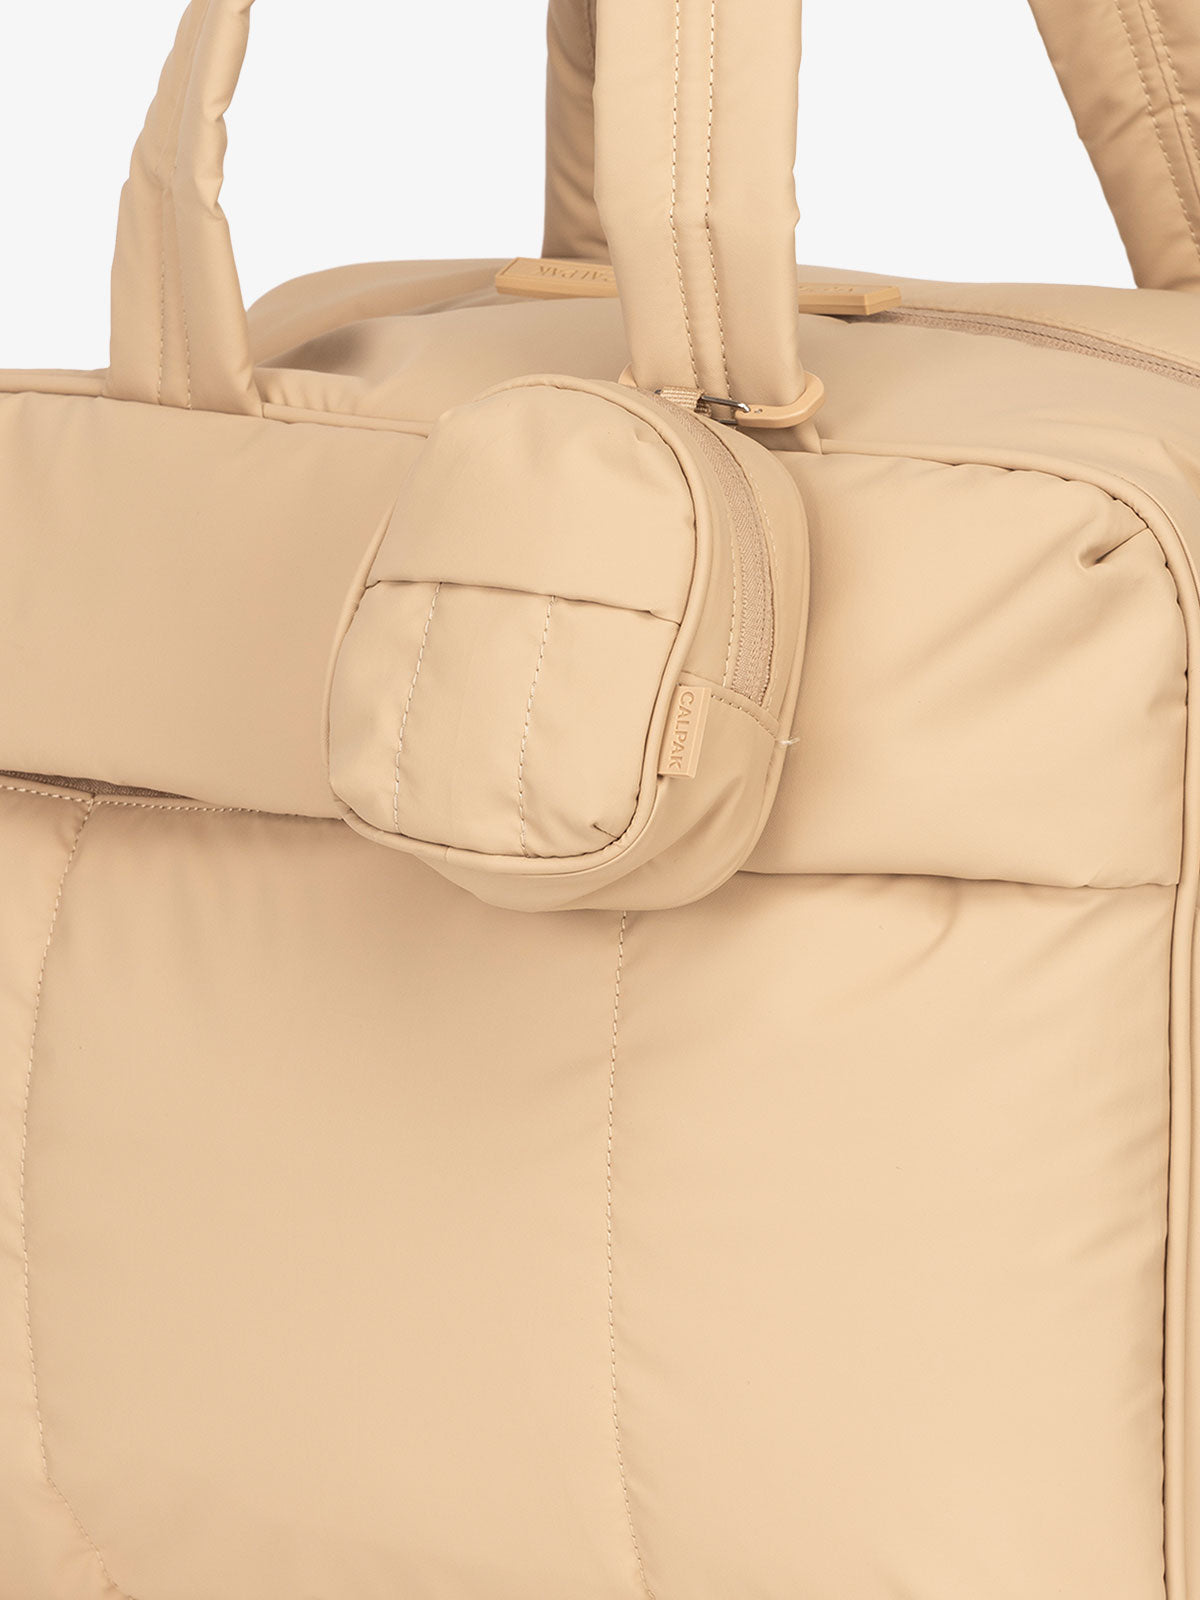 Bloomingdale's Little Brown Bag Key Pouch - 100% Exclusive | Bloomingdale's